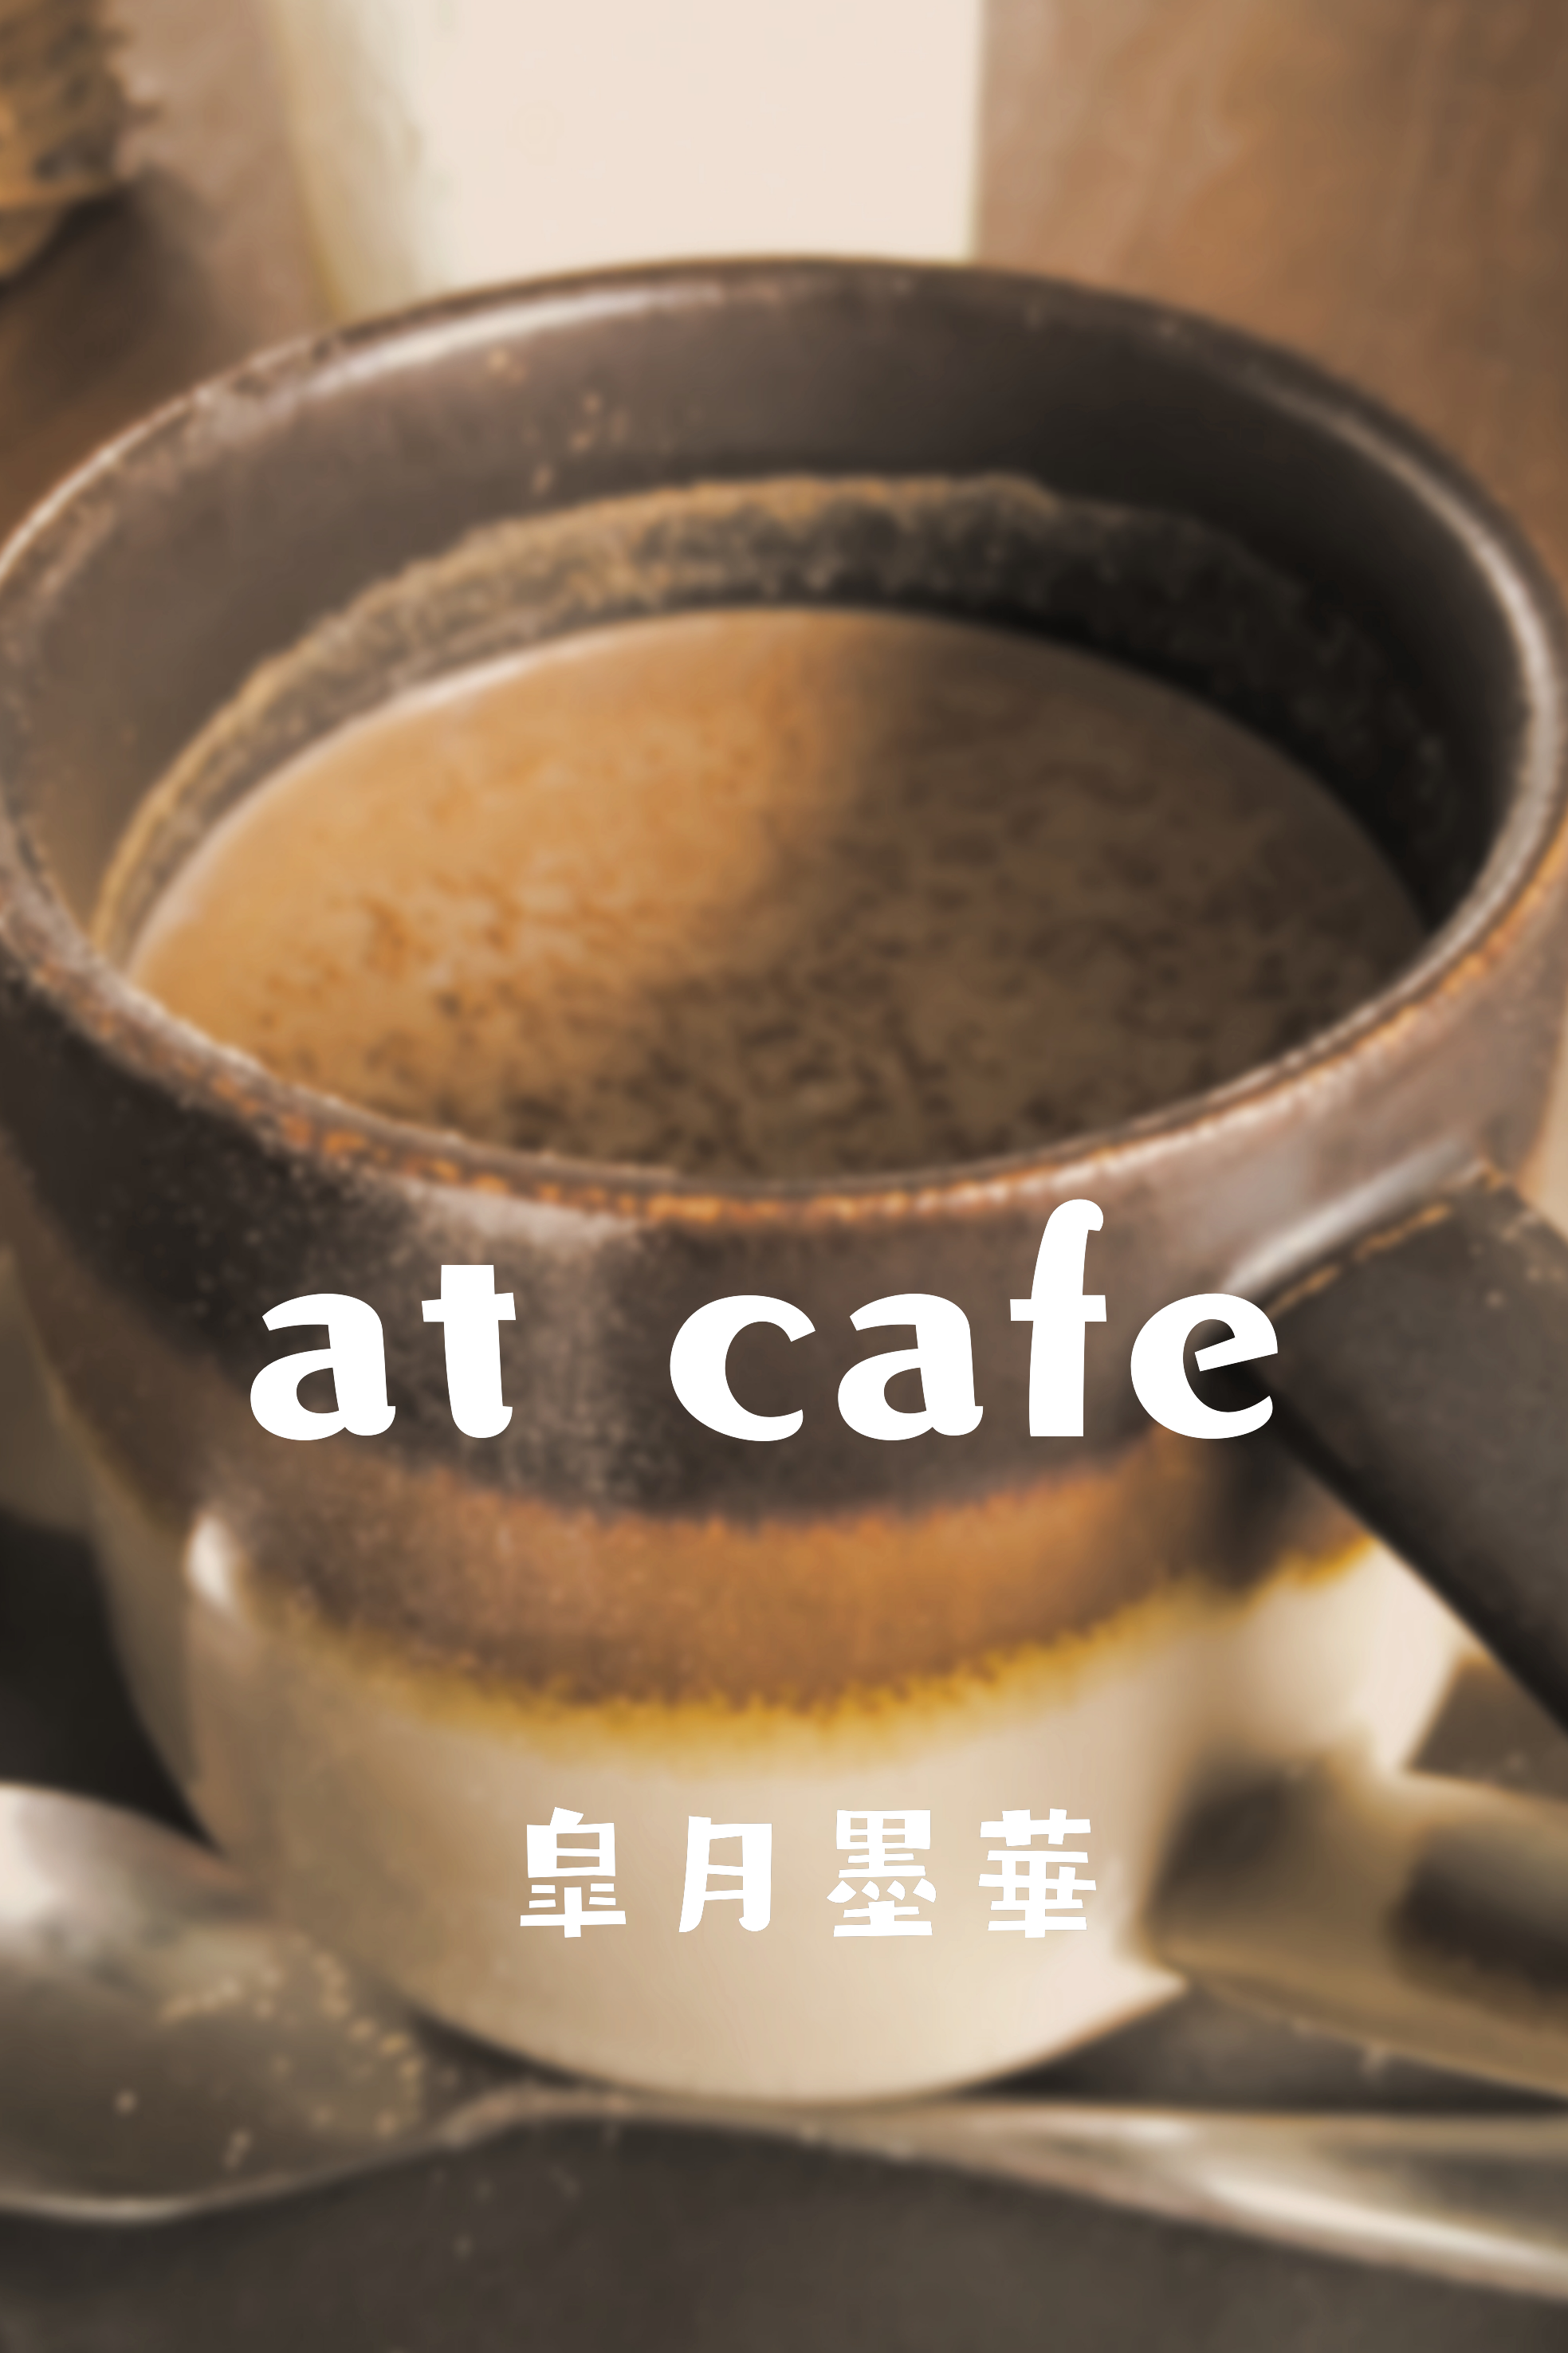 at cafe